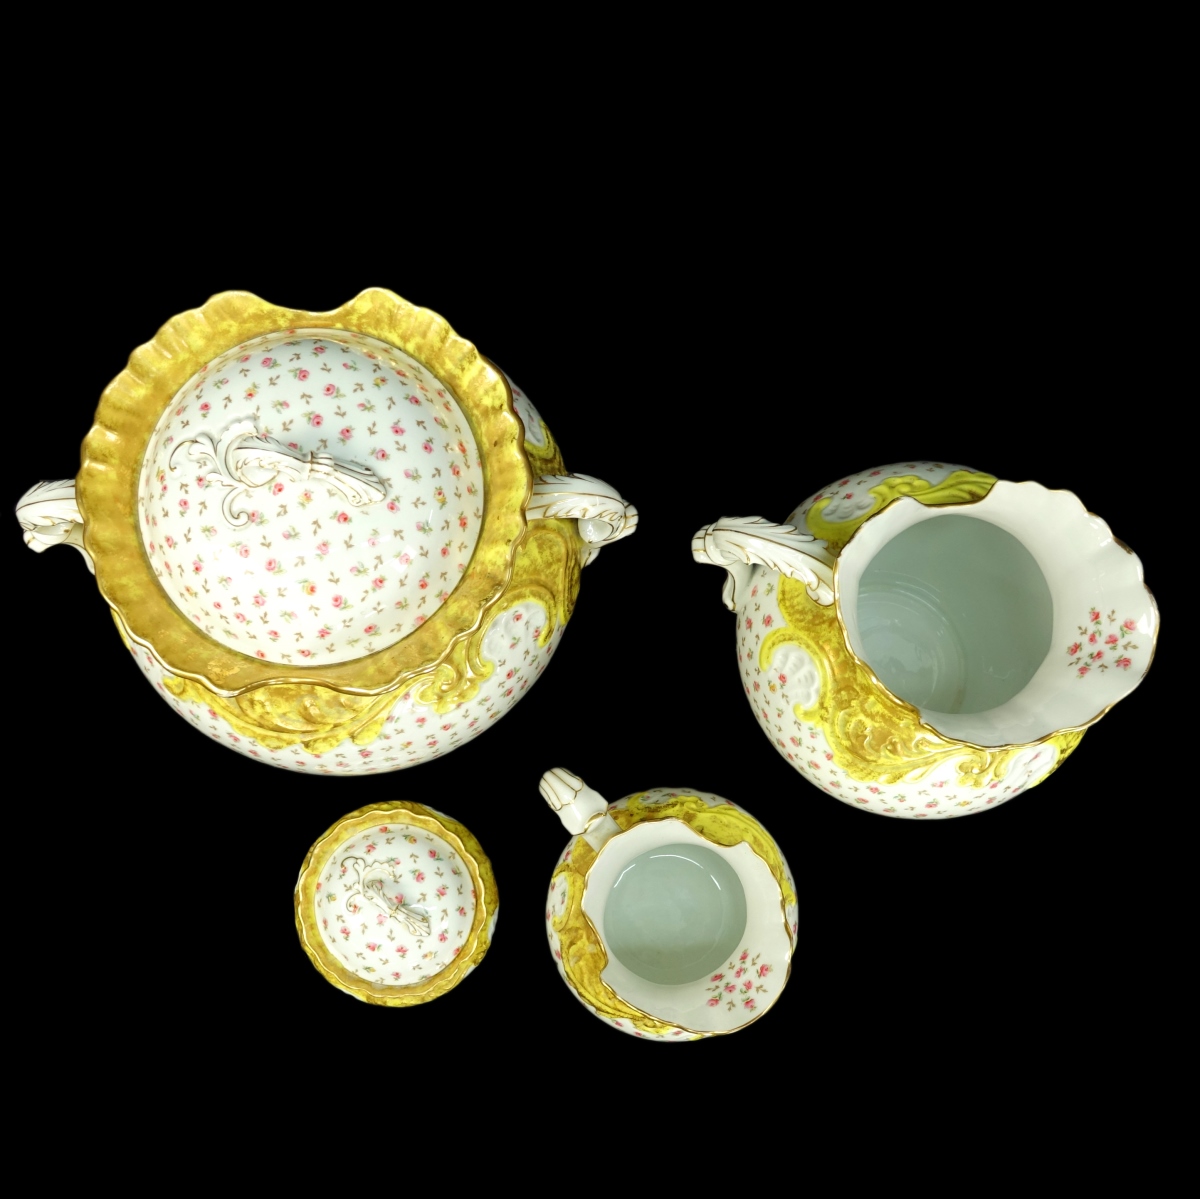 Four Pc Limoges Porcelain Bath Set